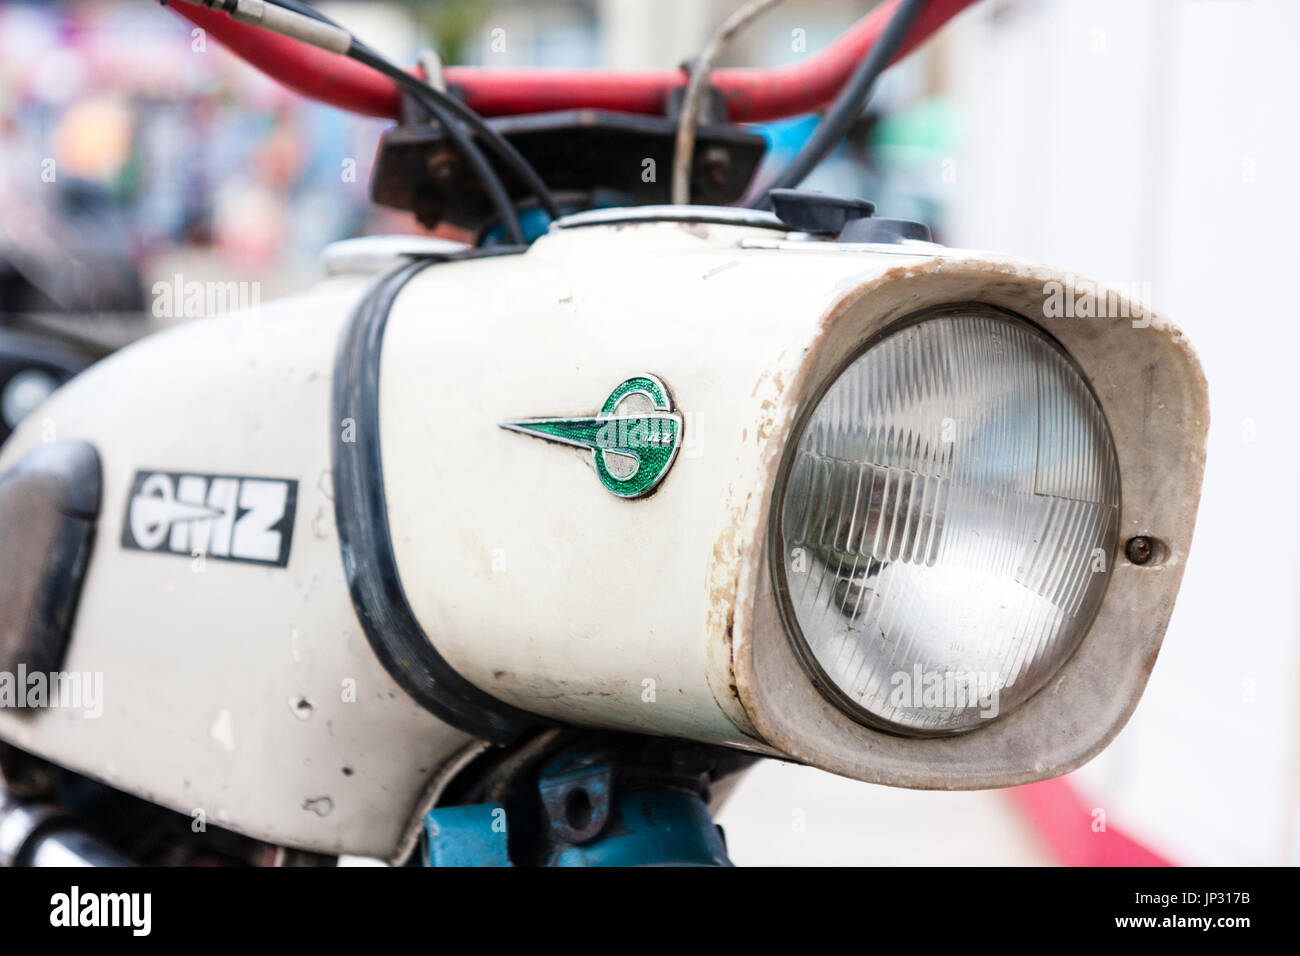 Ddr-Fahrrad, OMZ. Nahaufnahme Detail der Scheinwerfer, die mit dem grünen OMZ Logo auf der Seite. Stockfoto